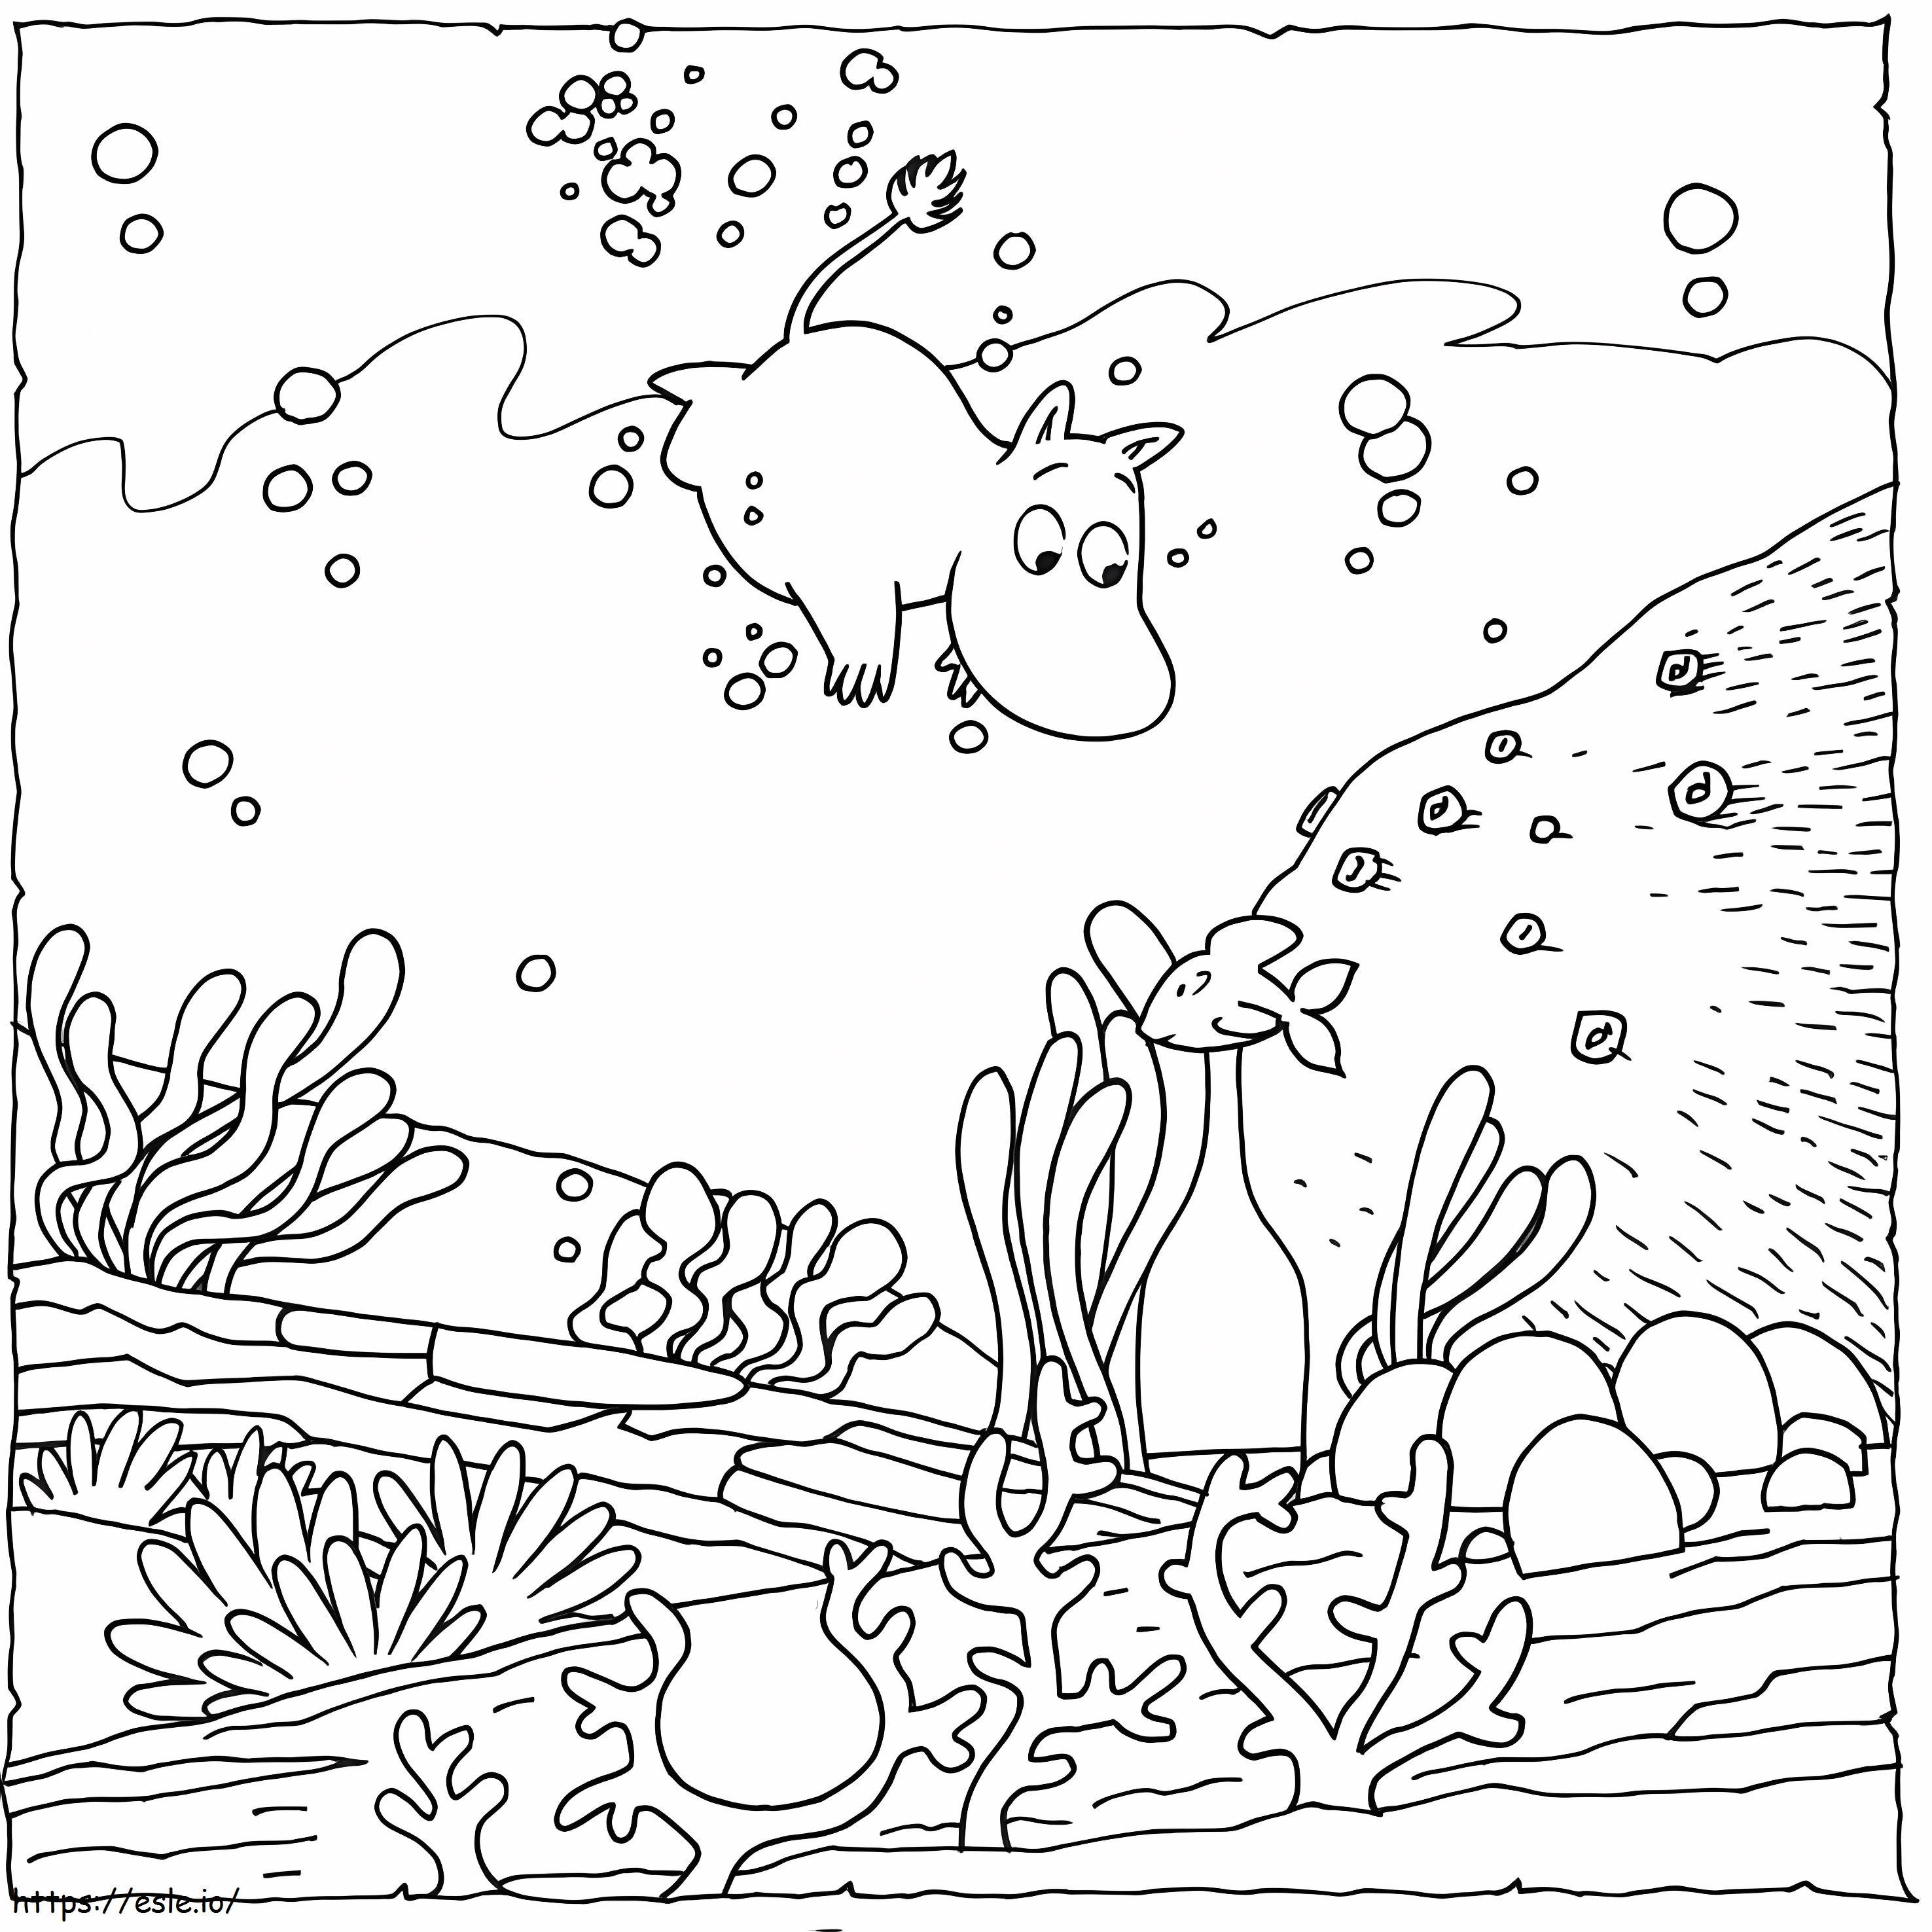 Mumintroll unter Wasser ausmalbilder